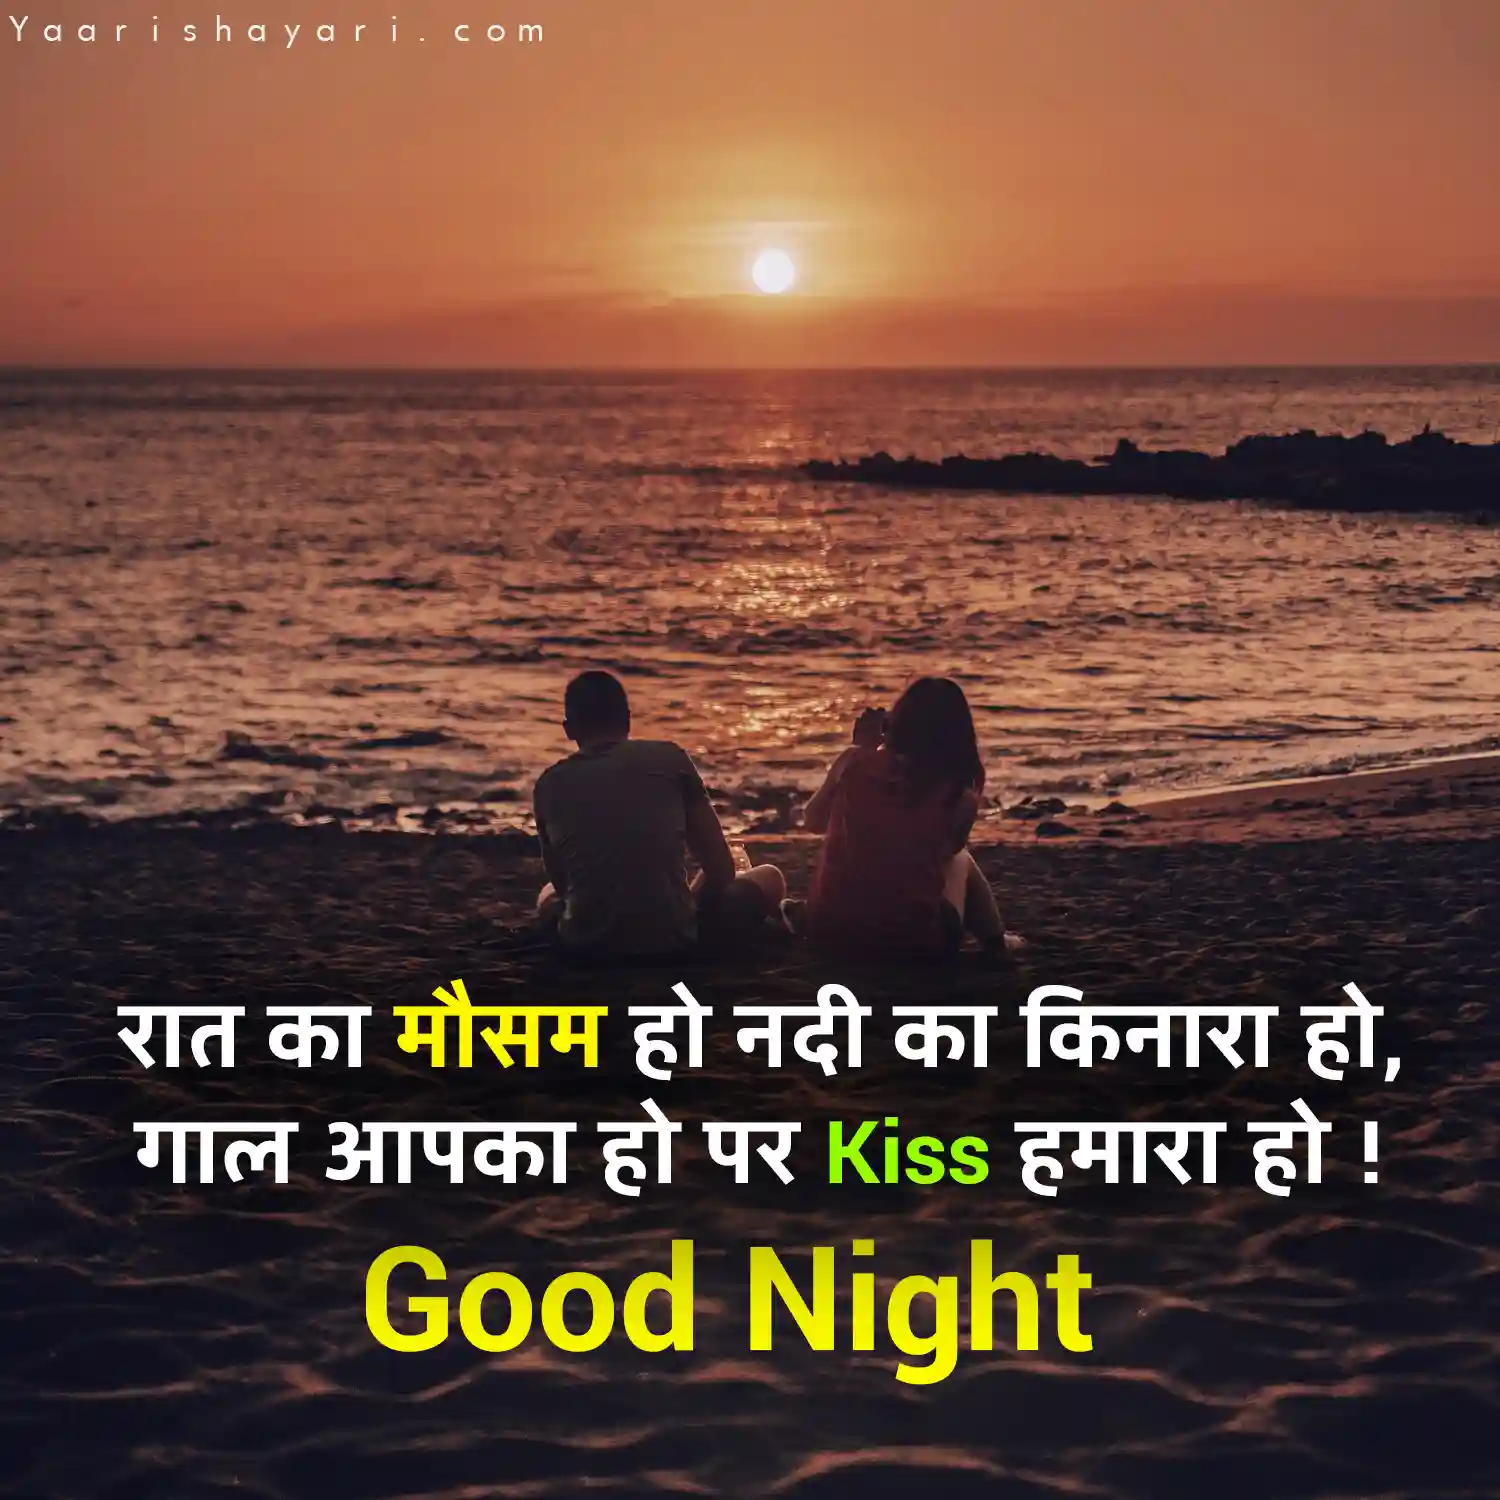 Good Night Shayari Message